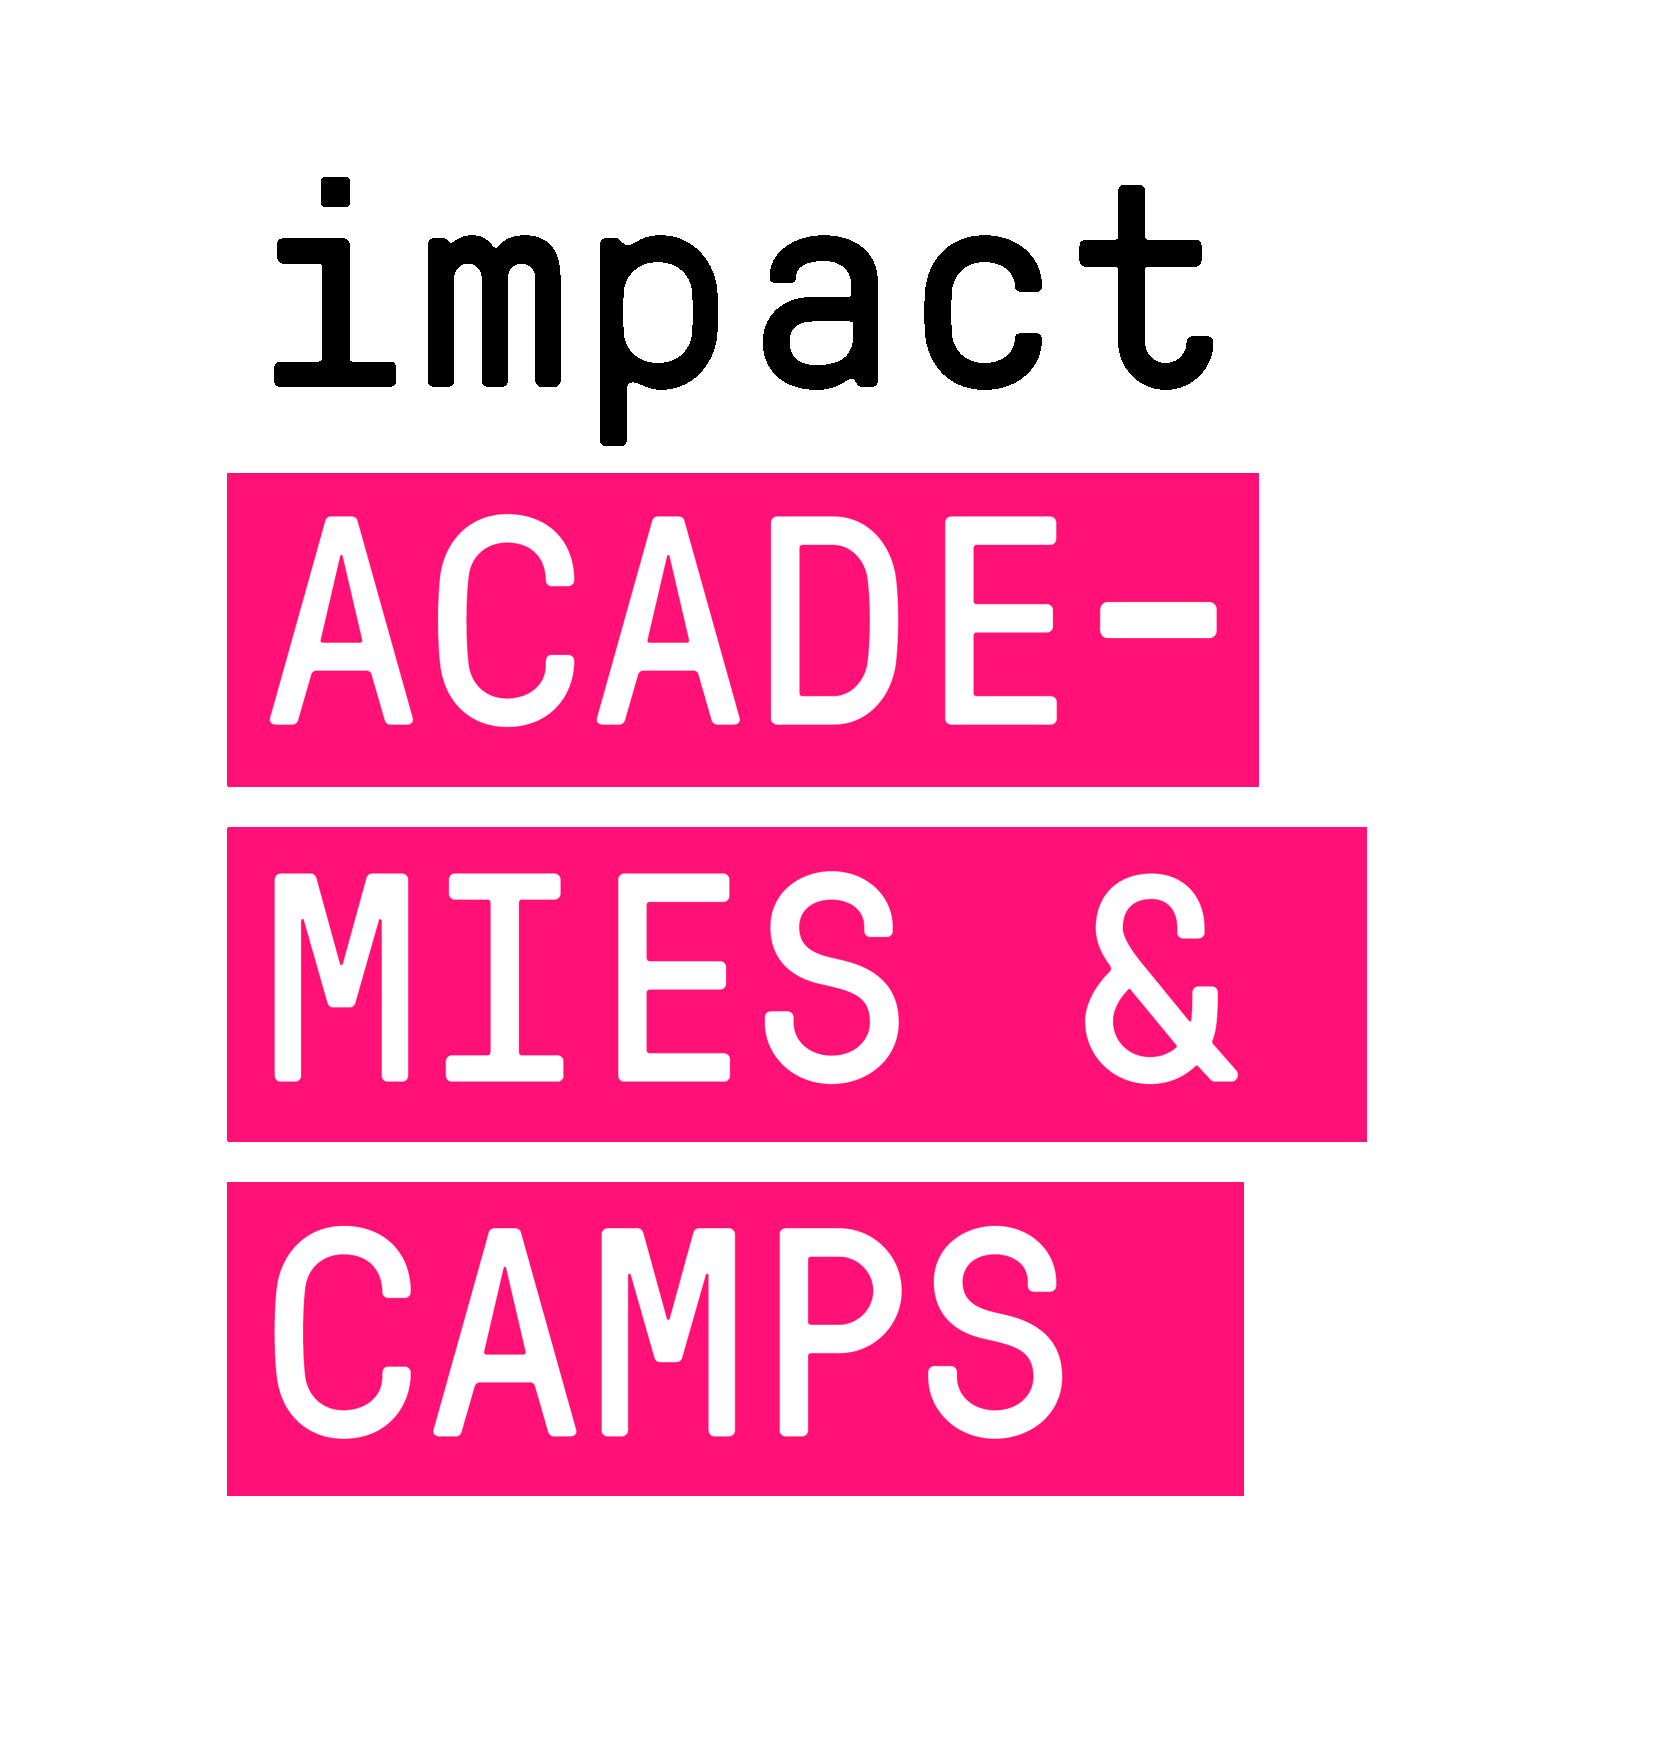 Импакт академия. Impact Academy. Impact Academies Тирасполь. Impact Academia. Impact logo.